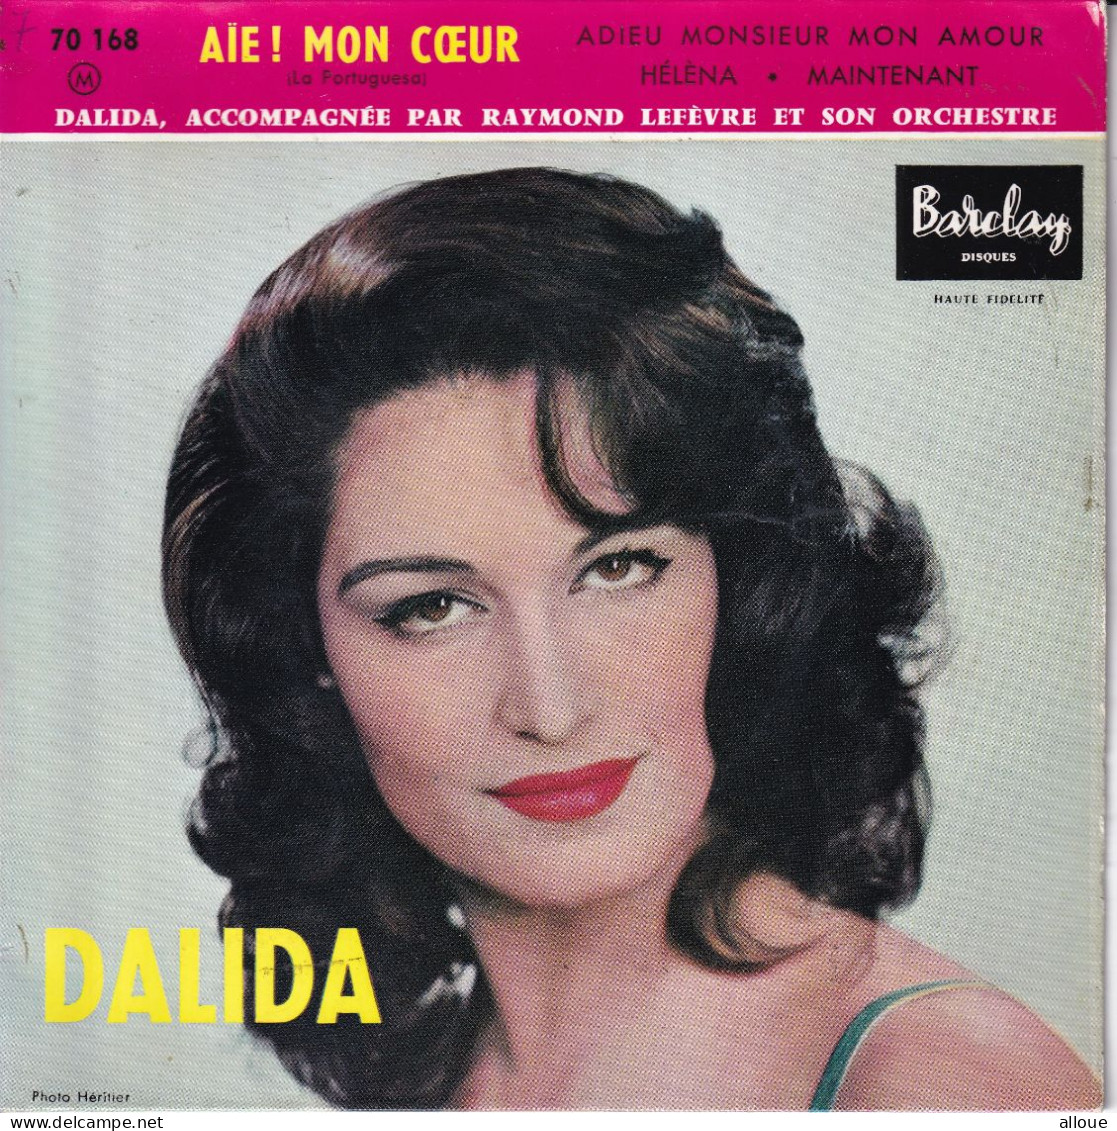 DALIDA - FR EP - AIE! MON COEUR + 3 - Otros - Canción Francesa